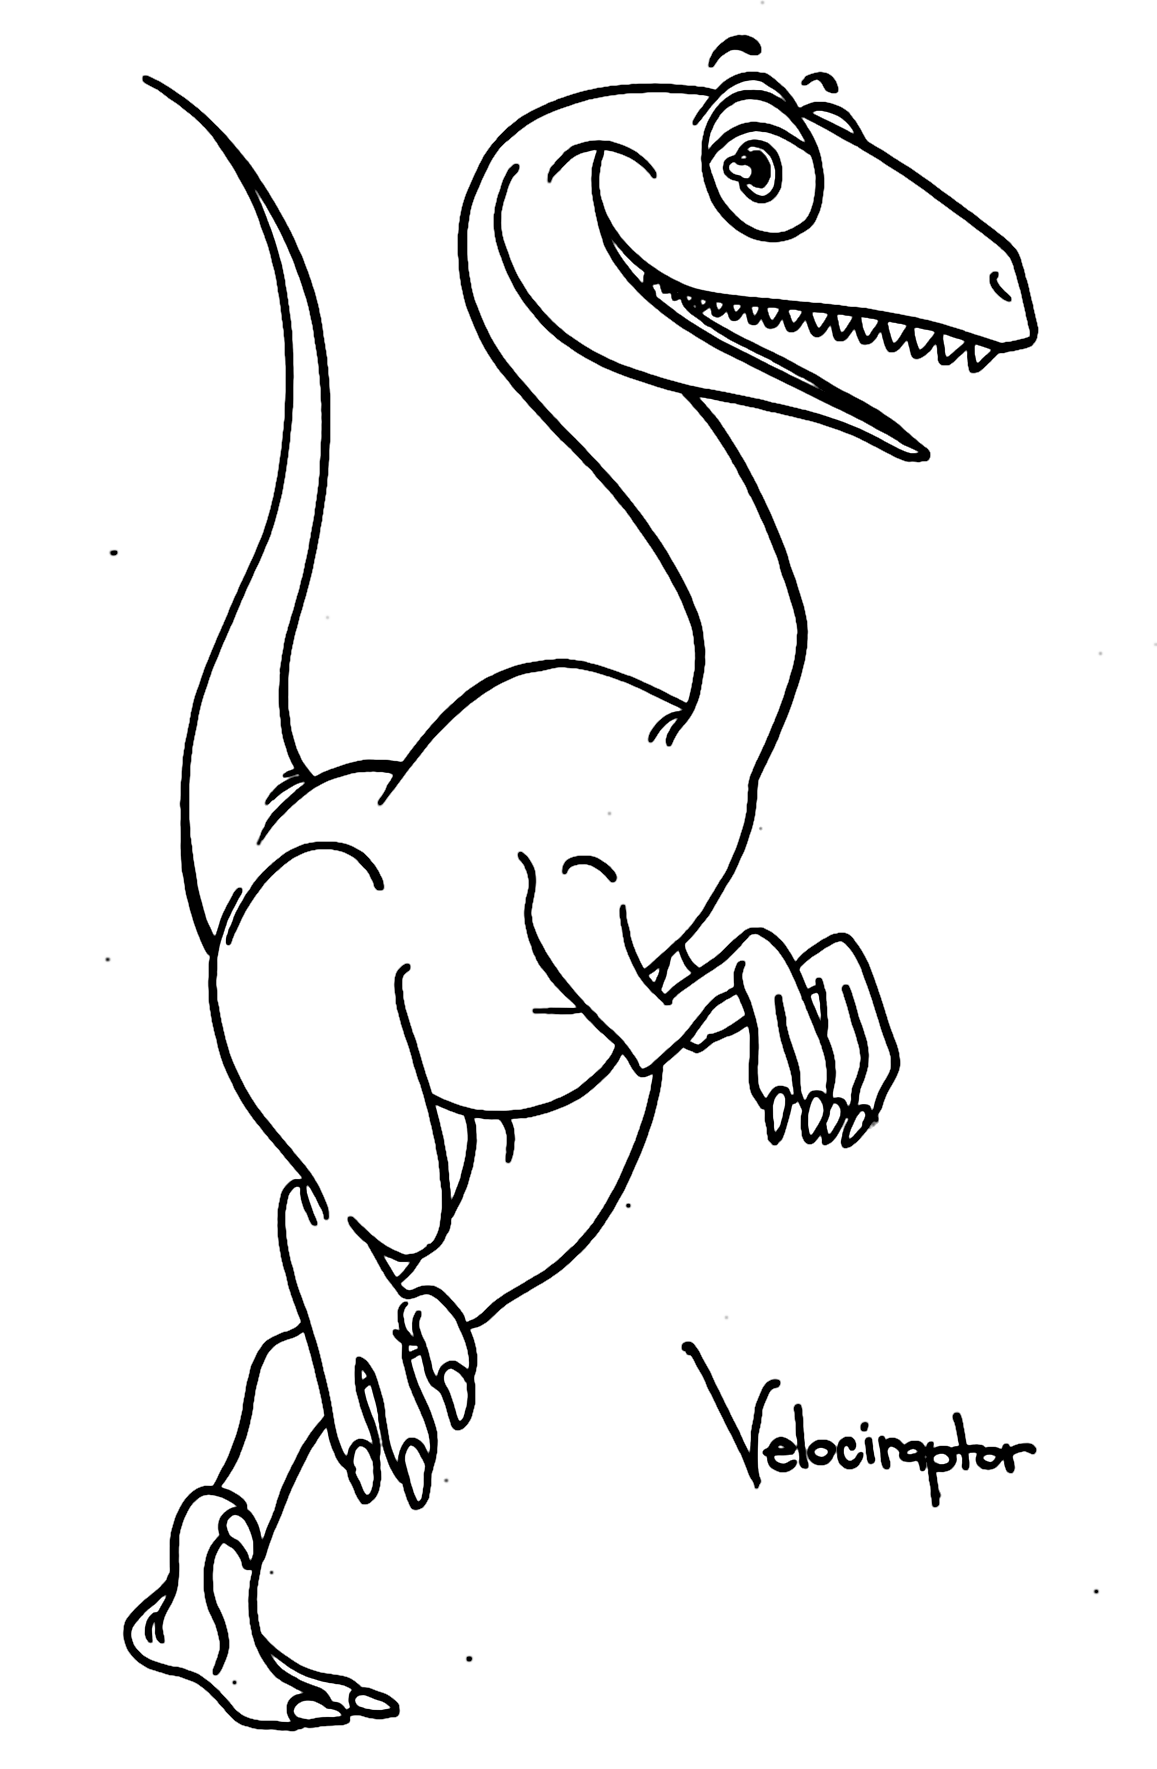 Dinosaurio Velociraptor Free Coloring Pages - Velociraptor Coloring Pages -  Páginas para colorear para niños y adultos